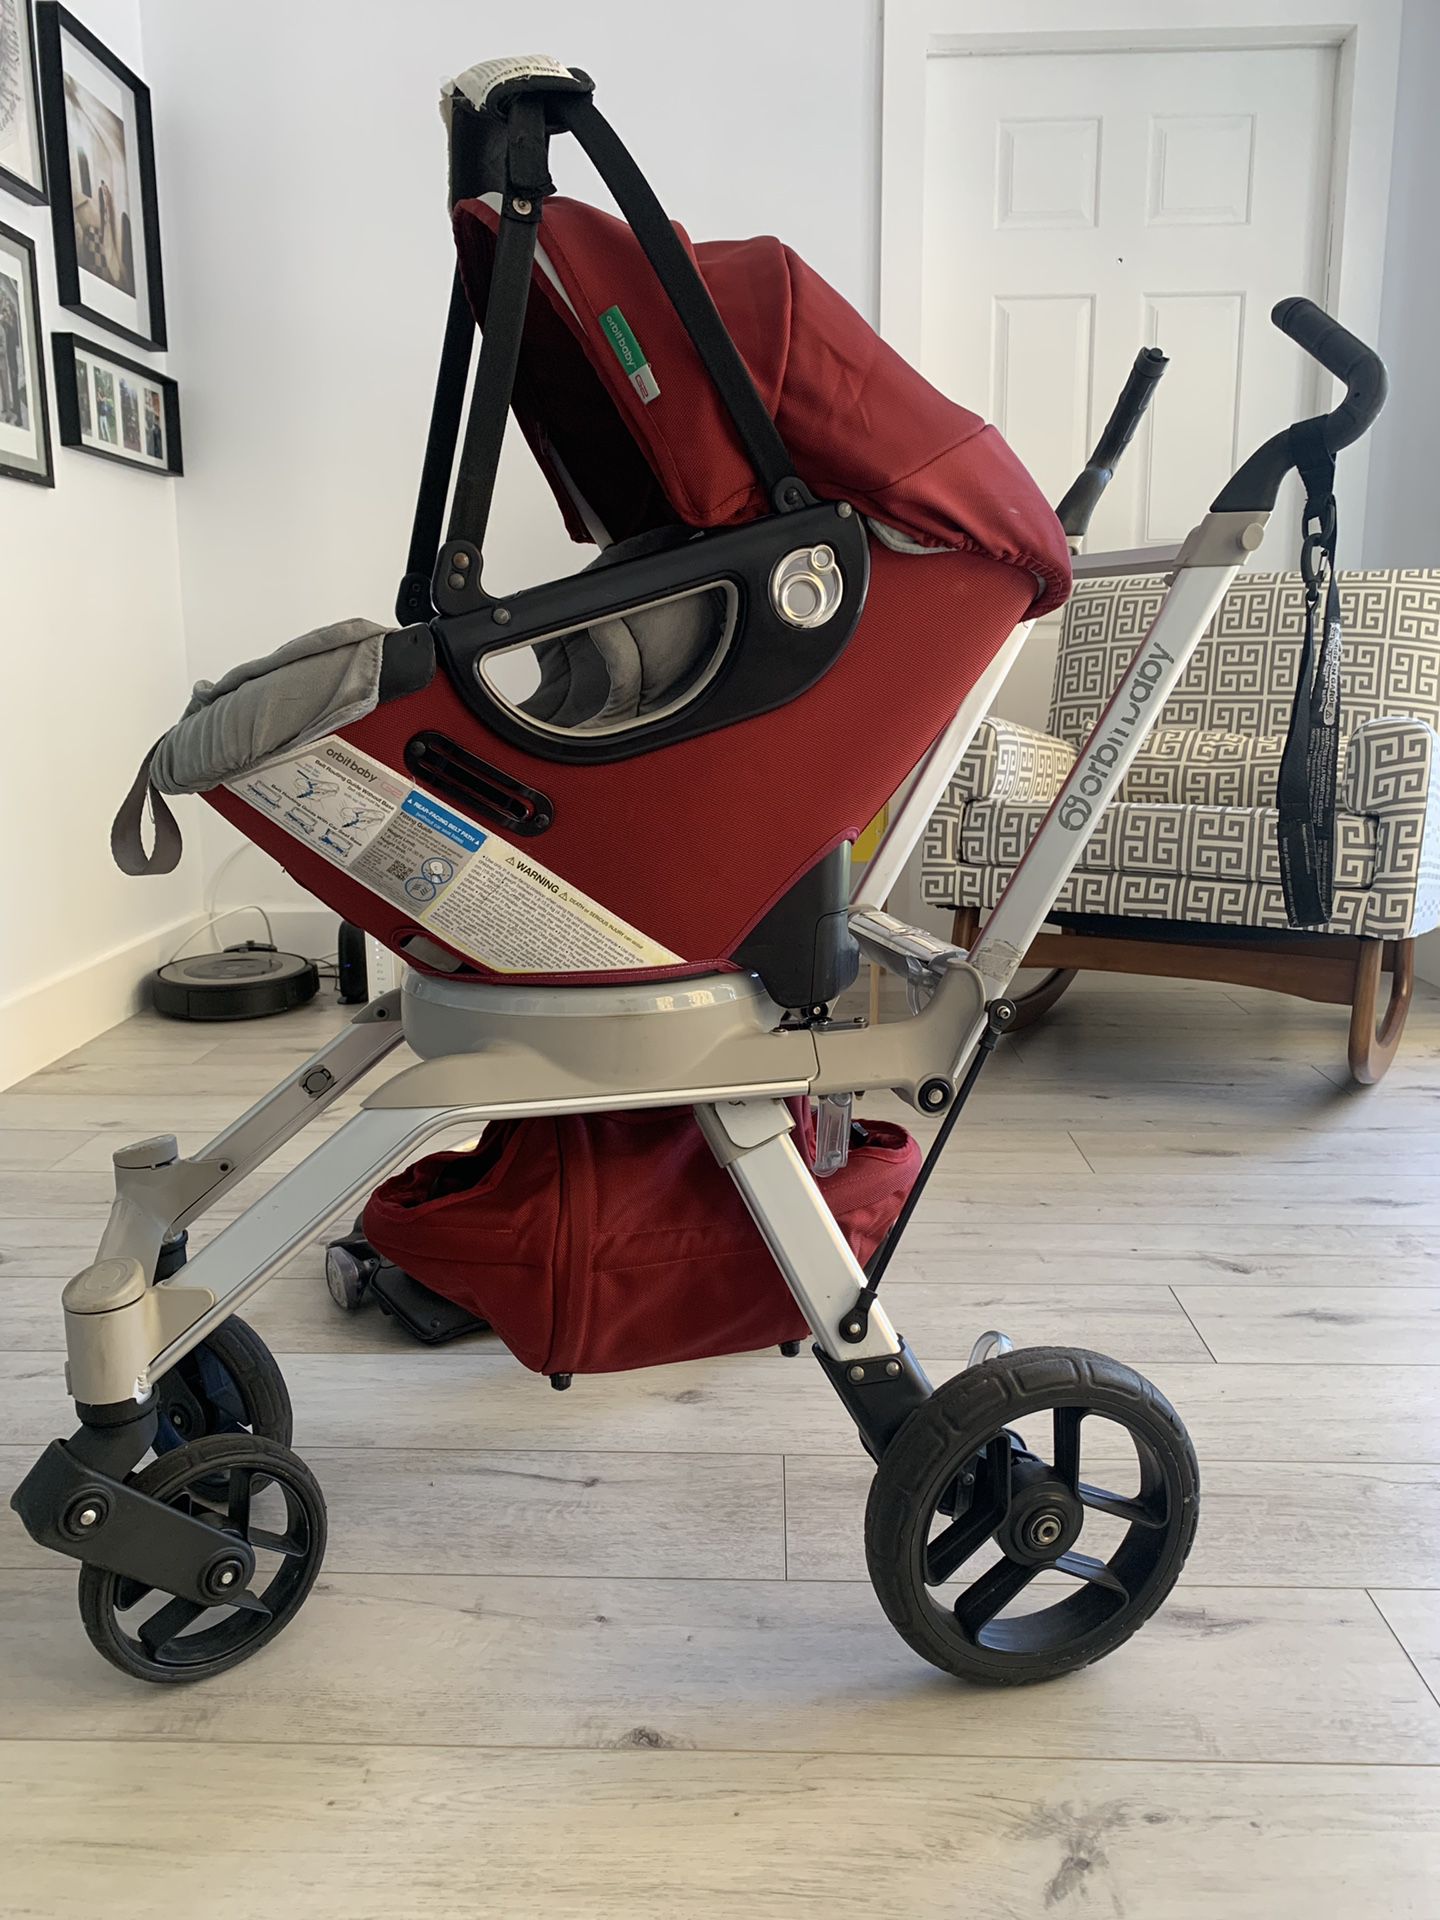 Orbit baby g2 car seat & stroller